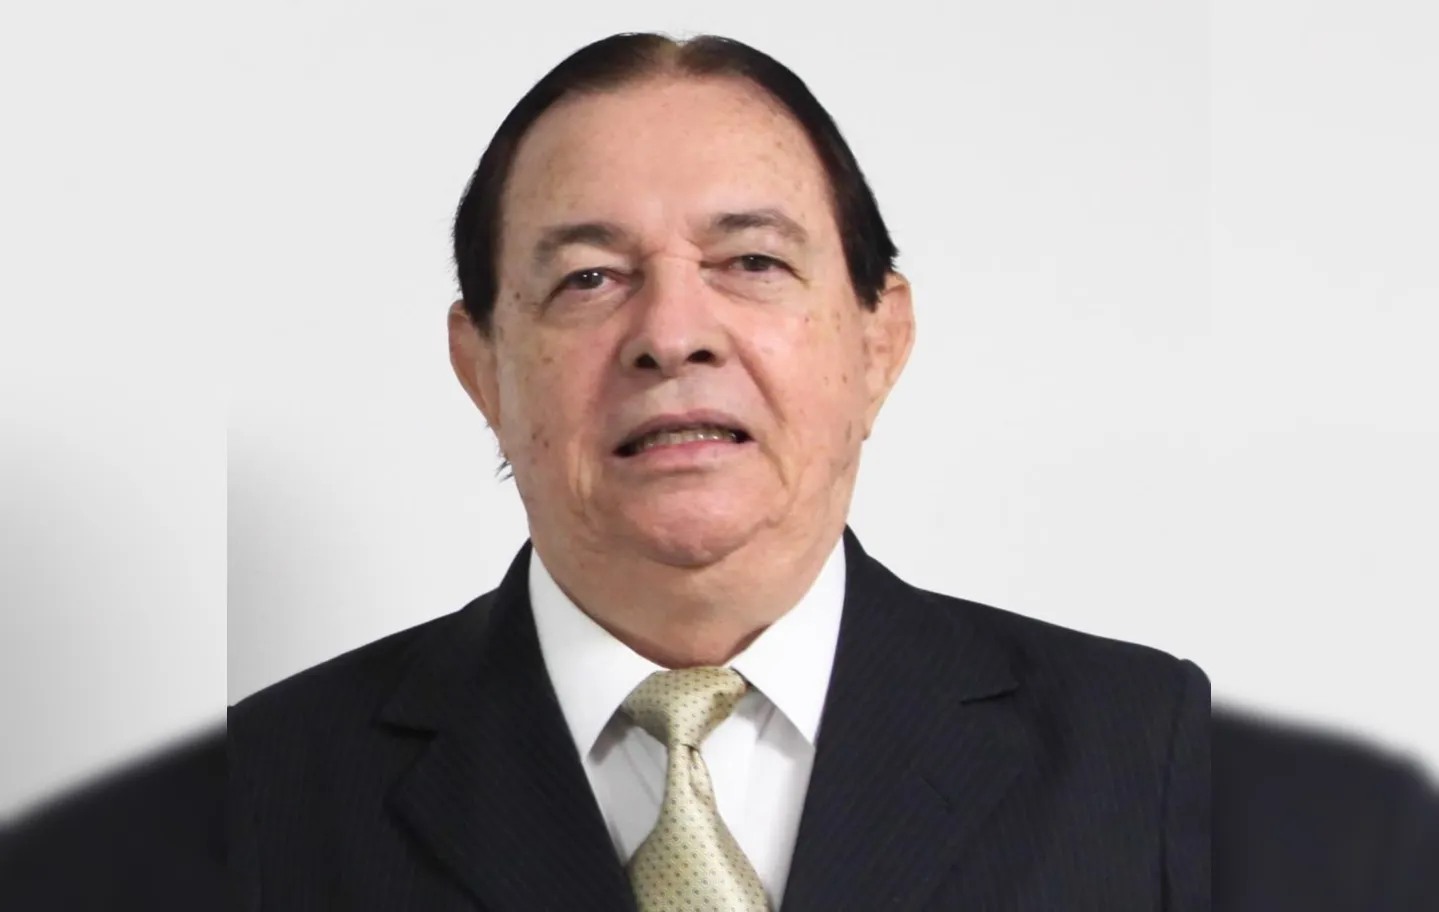 Thomas Bacellar é ex-presidente da OAB-BA | Foto: Divulgação